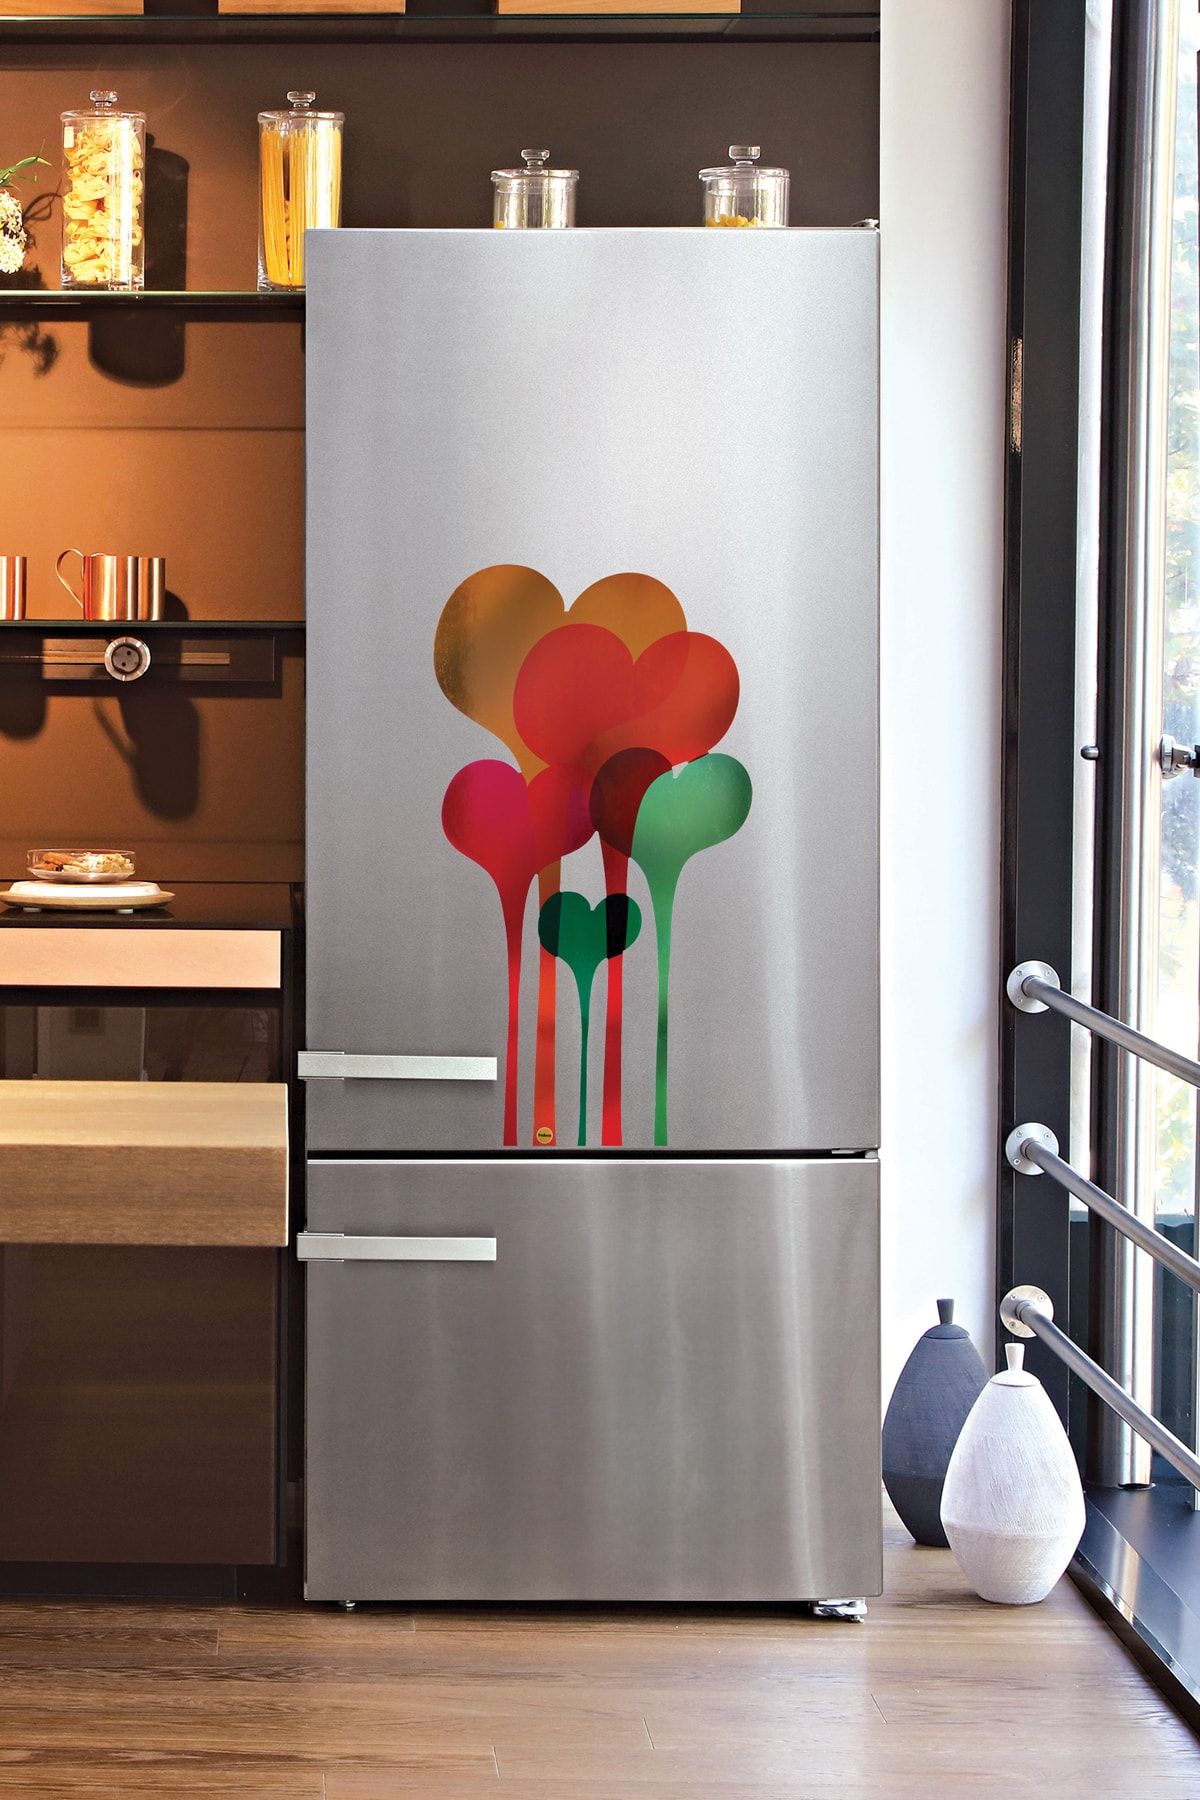 frideco Hearts Büyük Boy Dekoratif Buzdolabı Magneti (metalik Baskı) 40 Cmx75 Cm